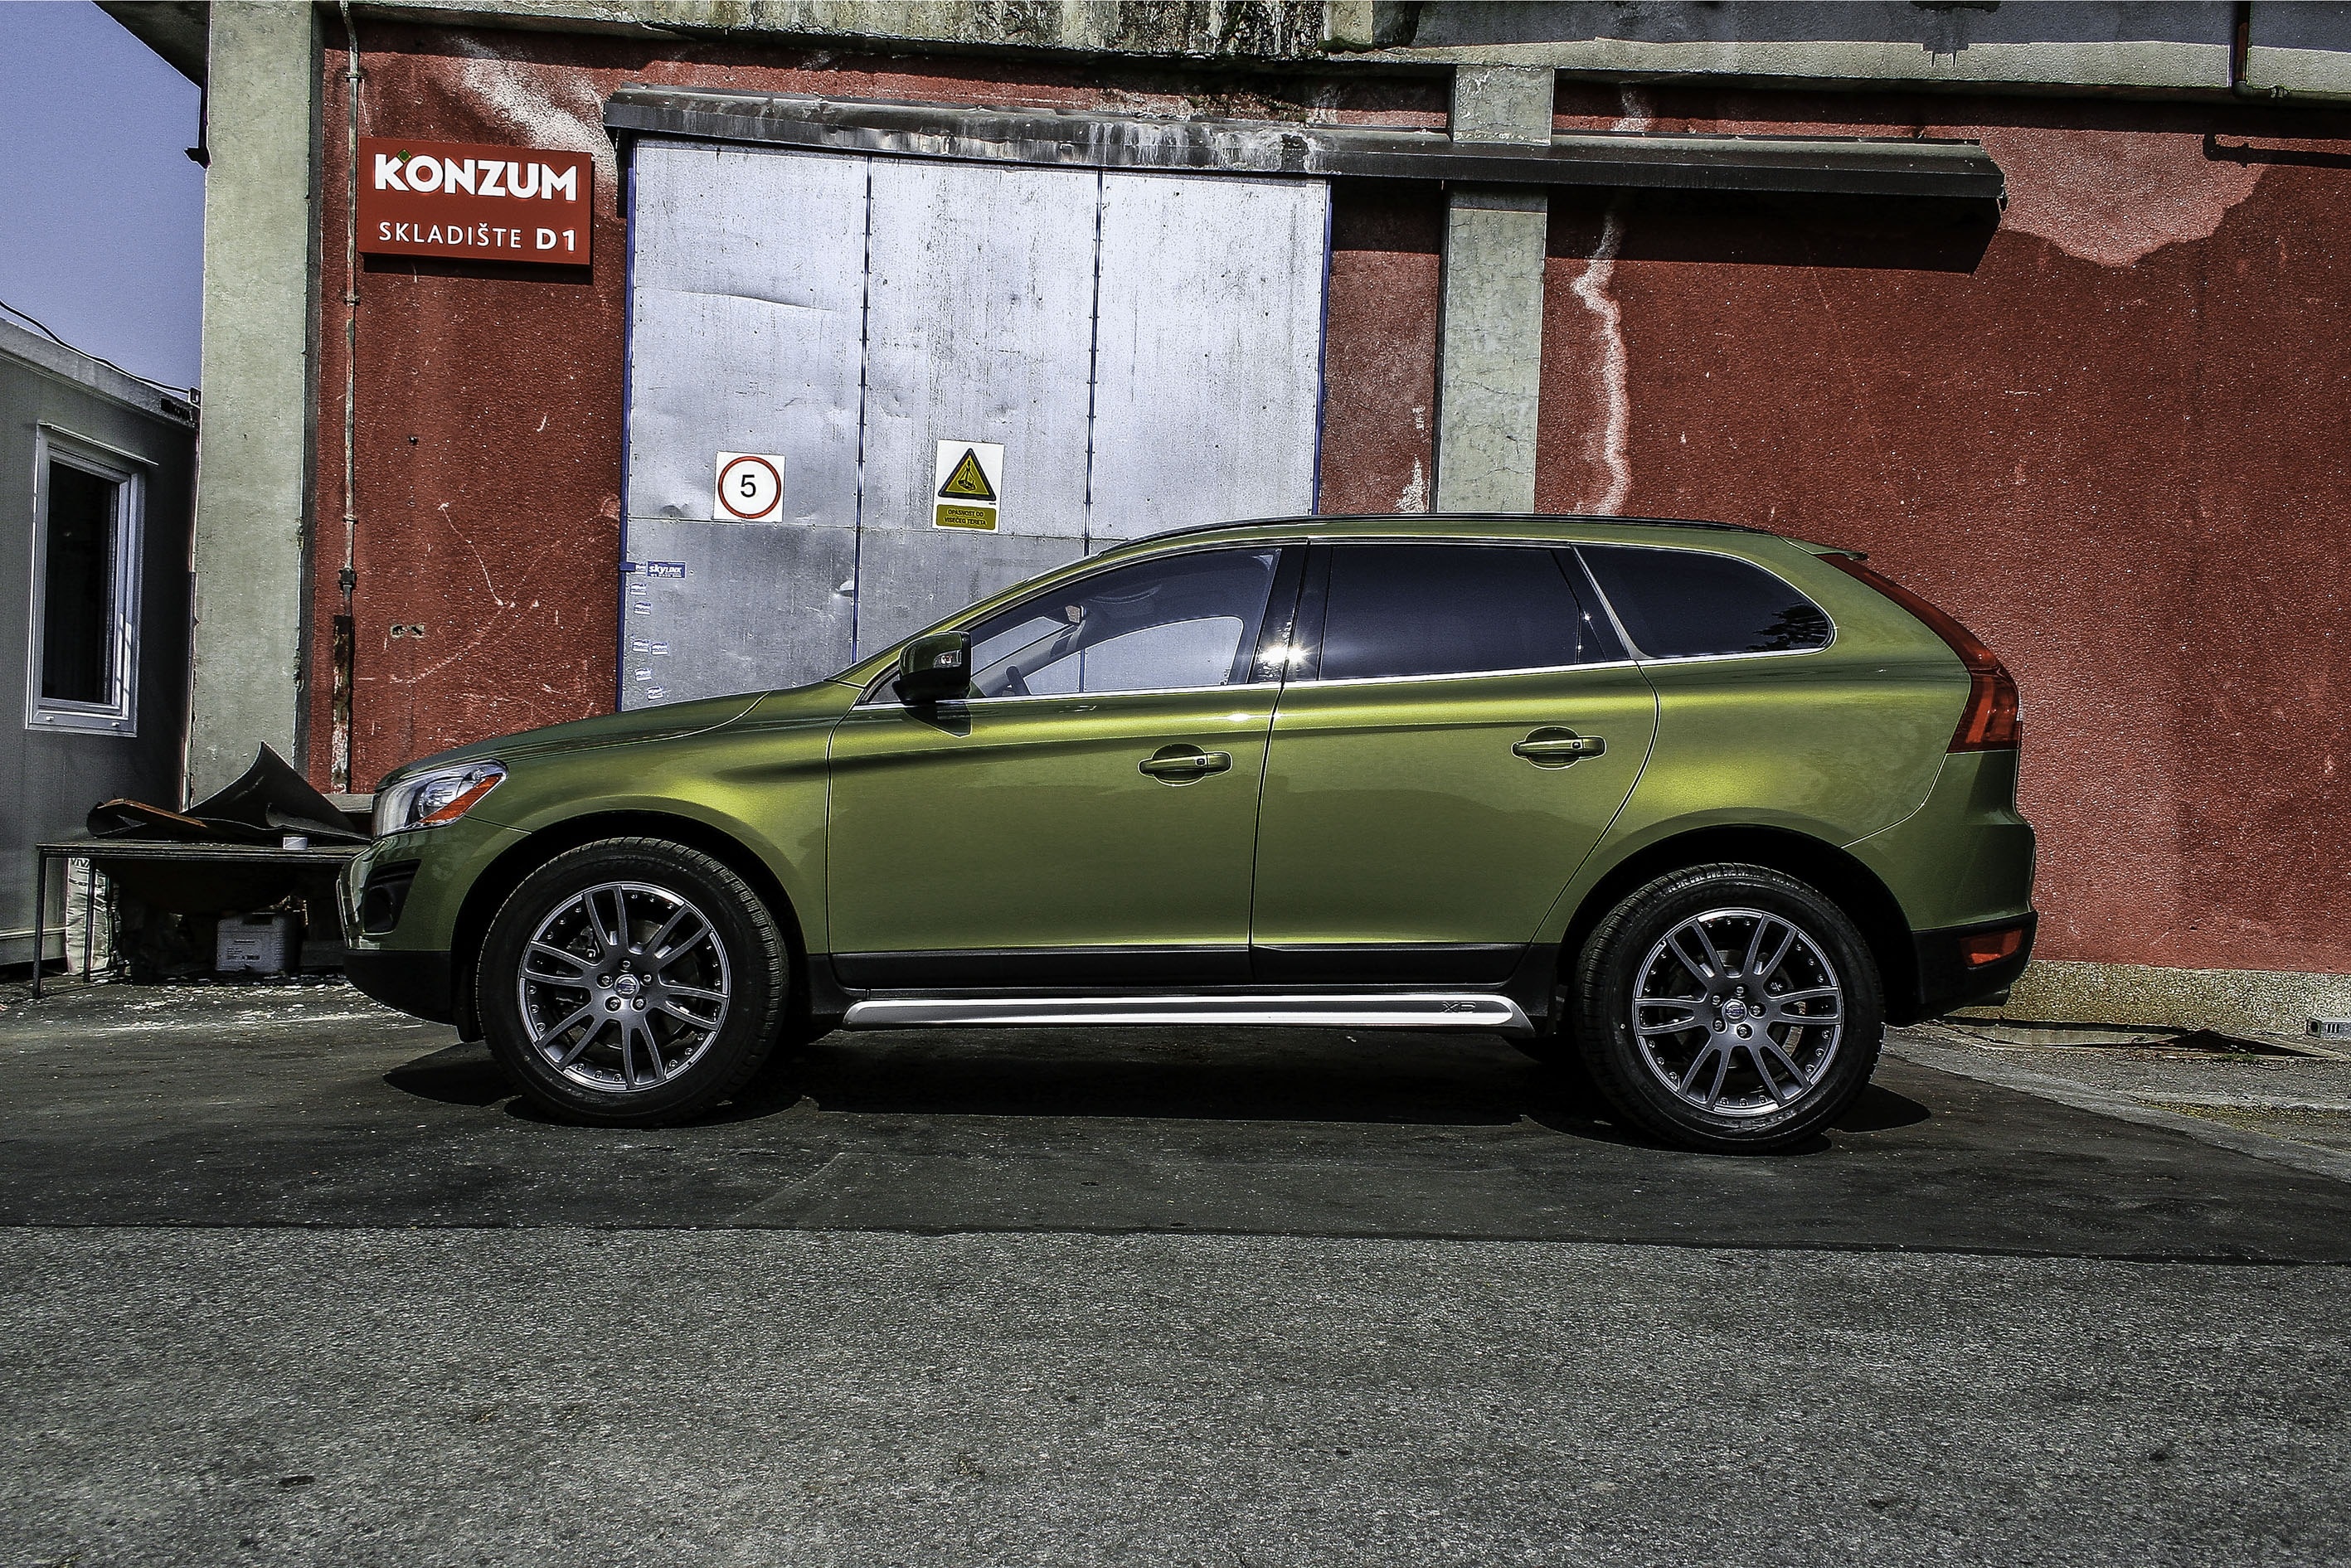 green 5 door hatchback